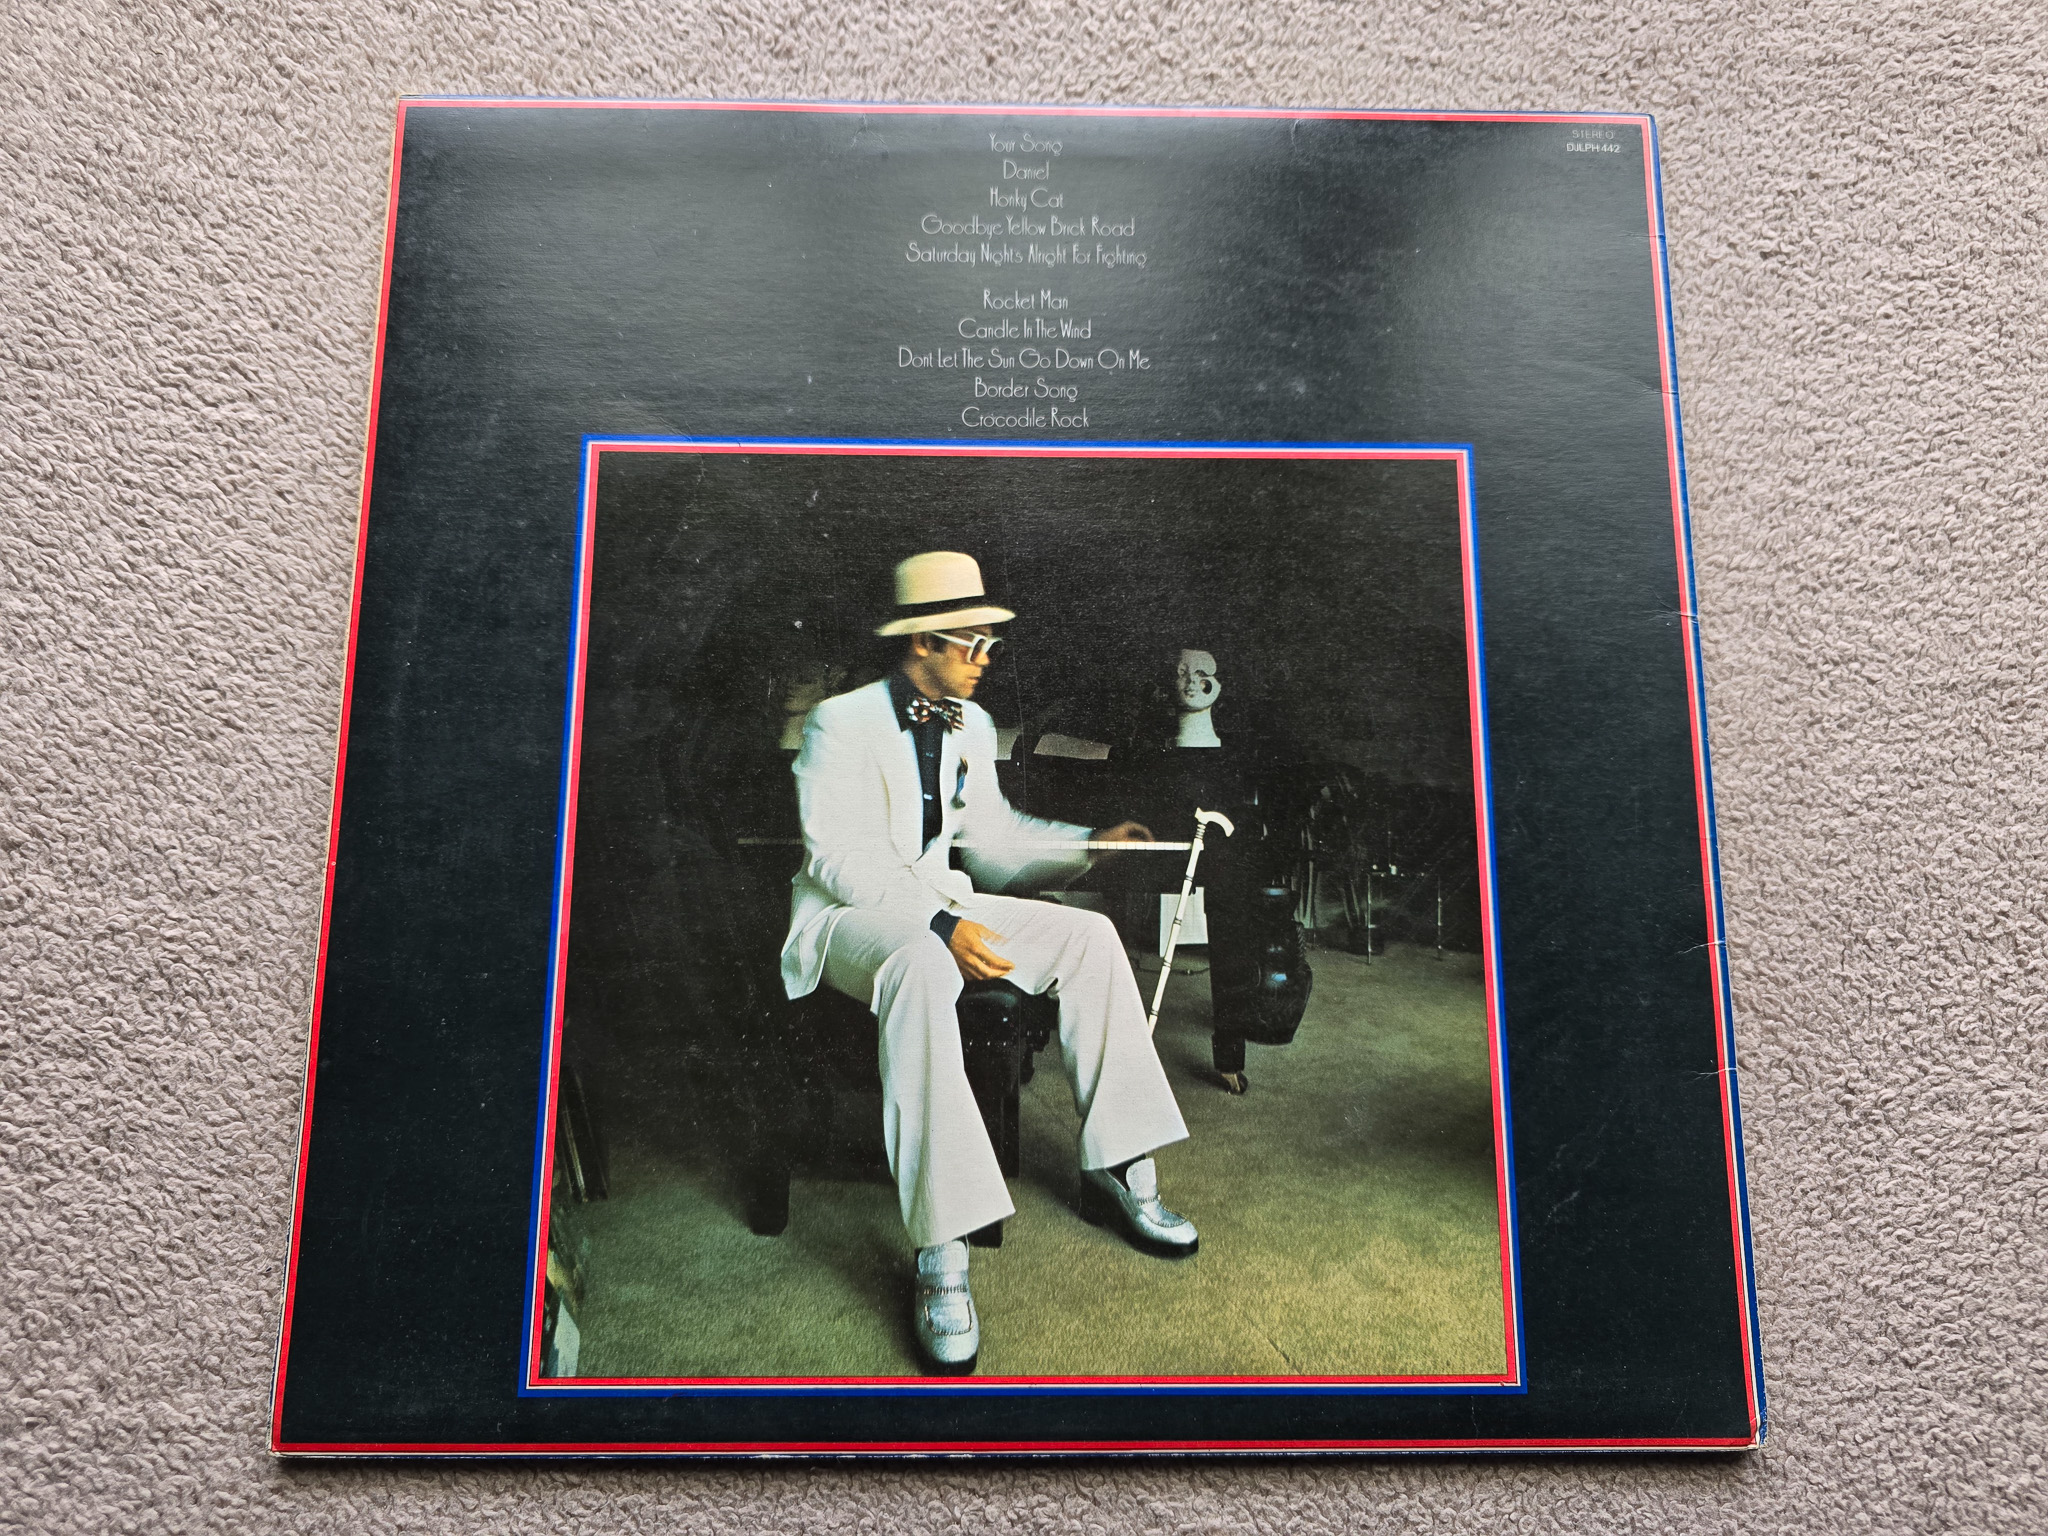 Elton John – Greatest Hits Red Splatter UK 1st issue vinyl LP - Image 5 of 9